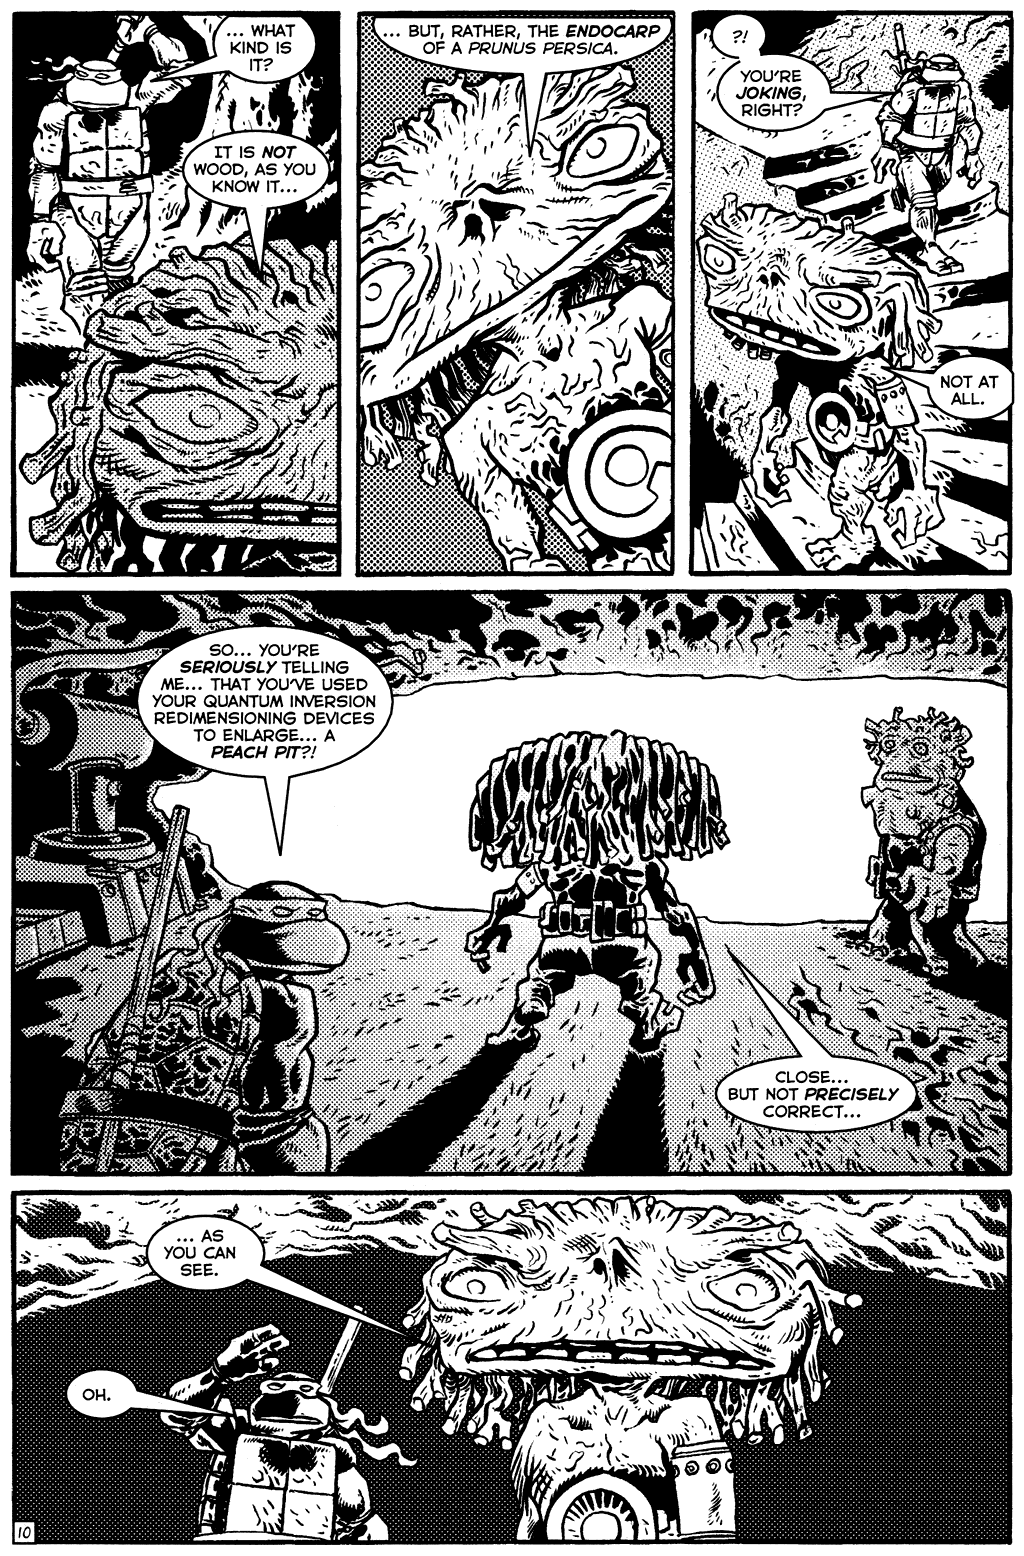 TMNT: Teenage Mutant Ninja Turtles issue 20 - Page 12